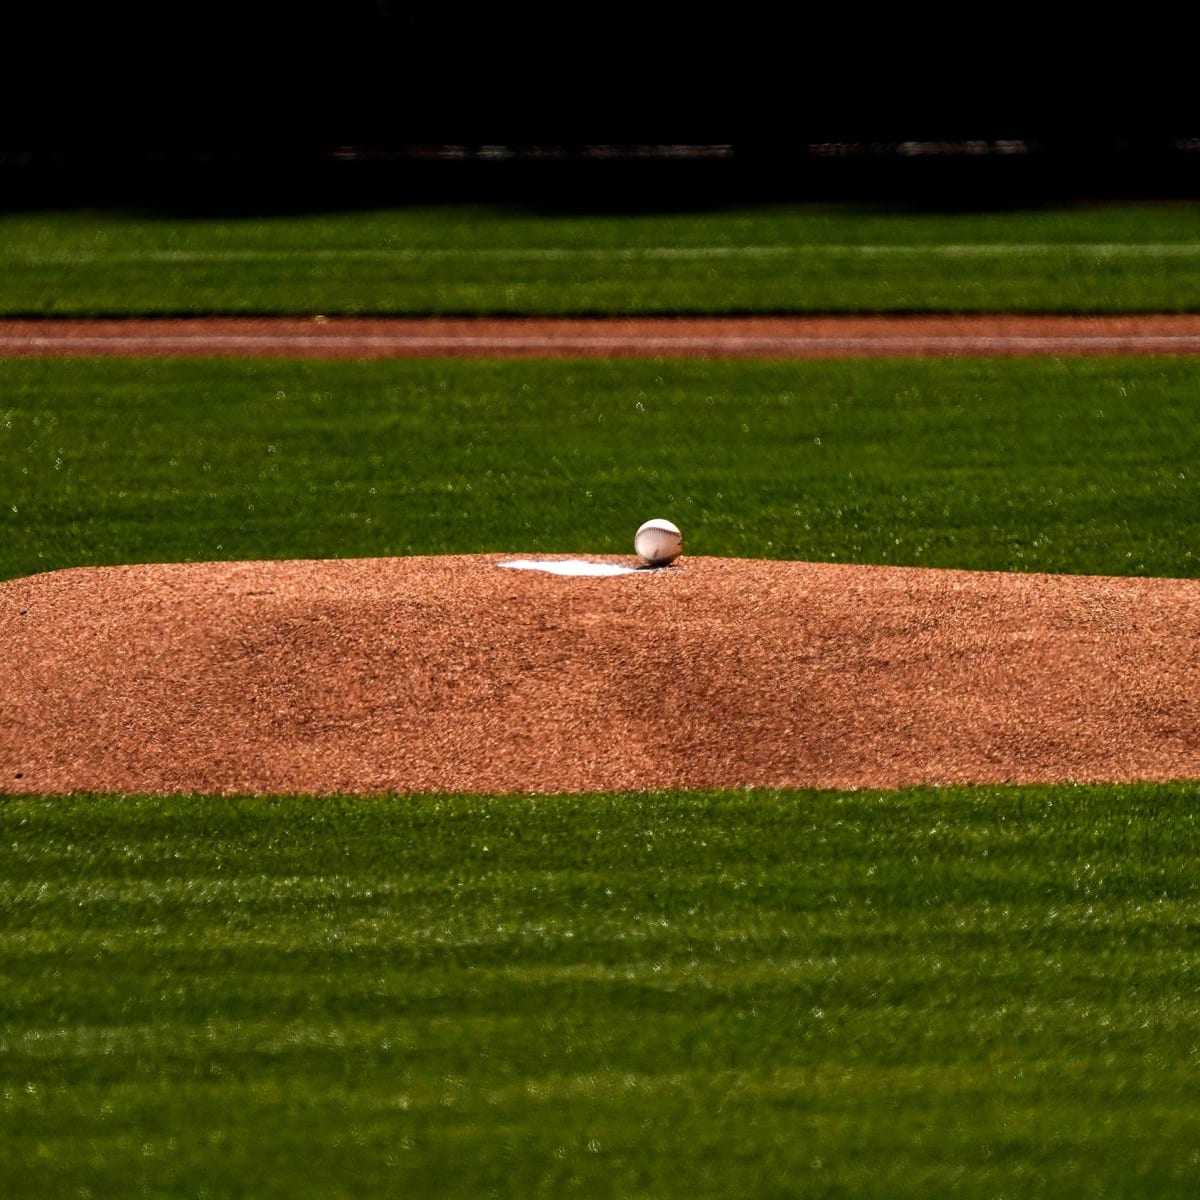 MLB pitching prospect back on mound - MSU Denver RED